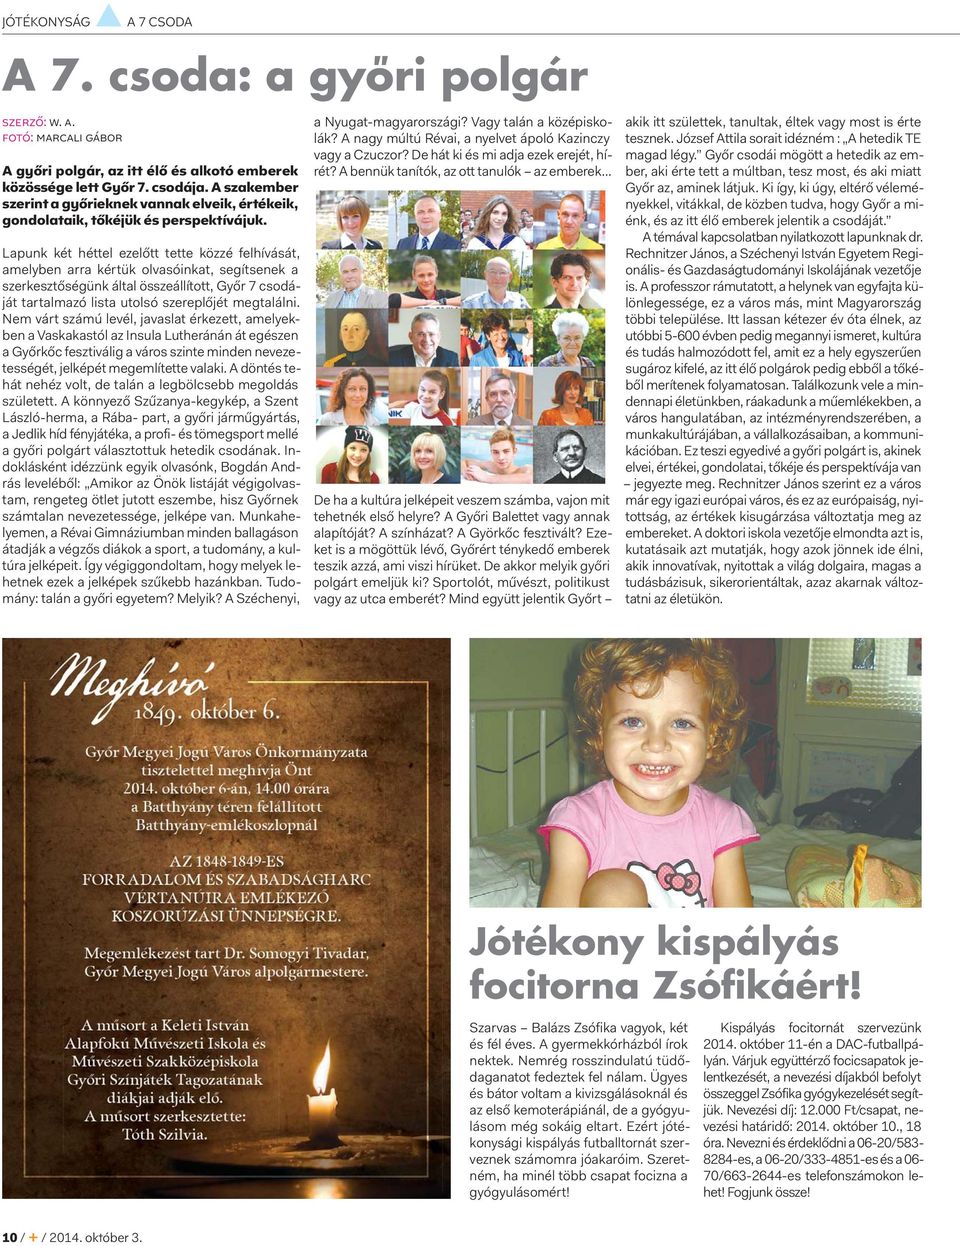 Lapunk két héttel ezelőtt tette közzé felhívását, amelyben arra kértük olvasóinkat, segítsenek a szerkesztőségünk által összeállított, Győr 7 csodáját tartalmazó lista utolsó szereplőjét megtalálni.